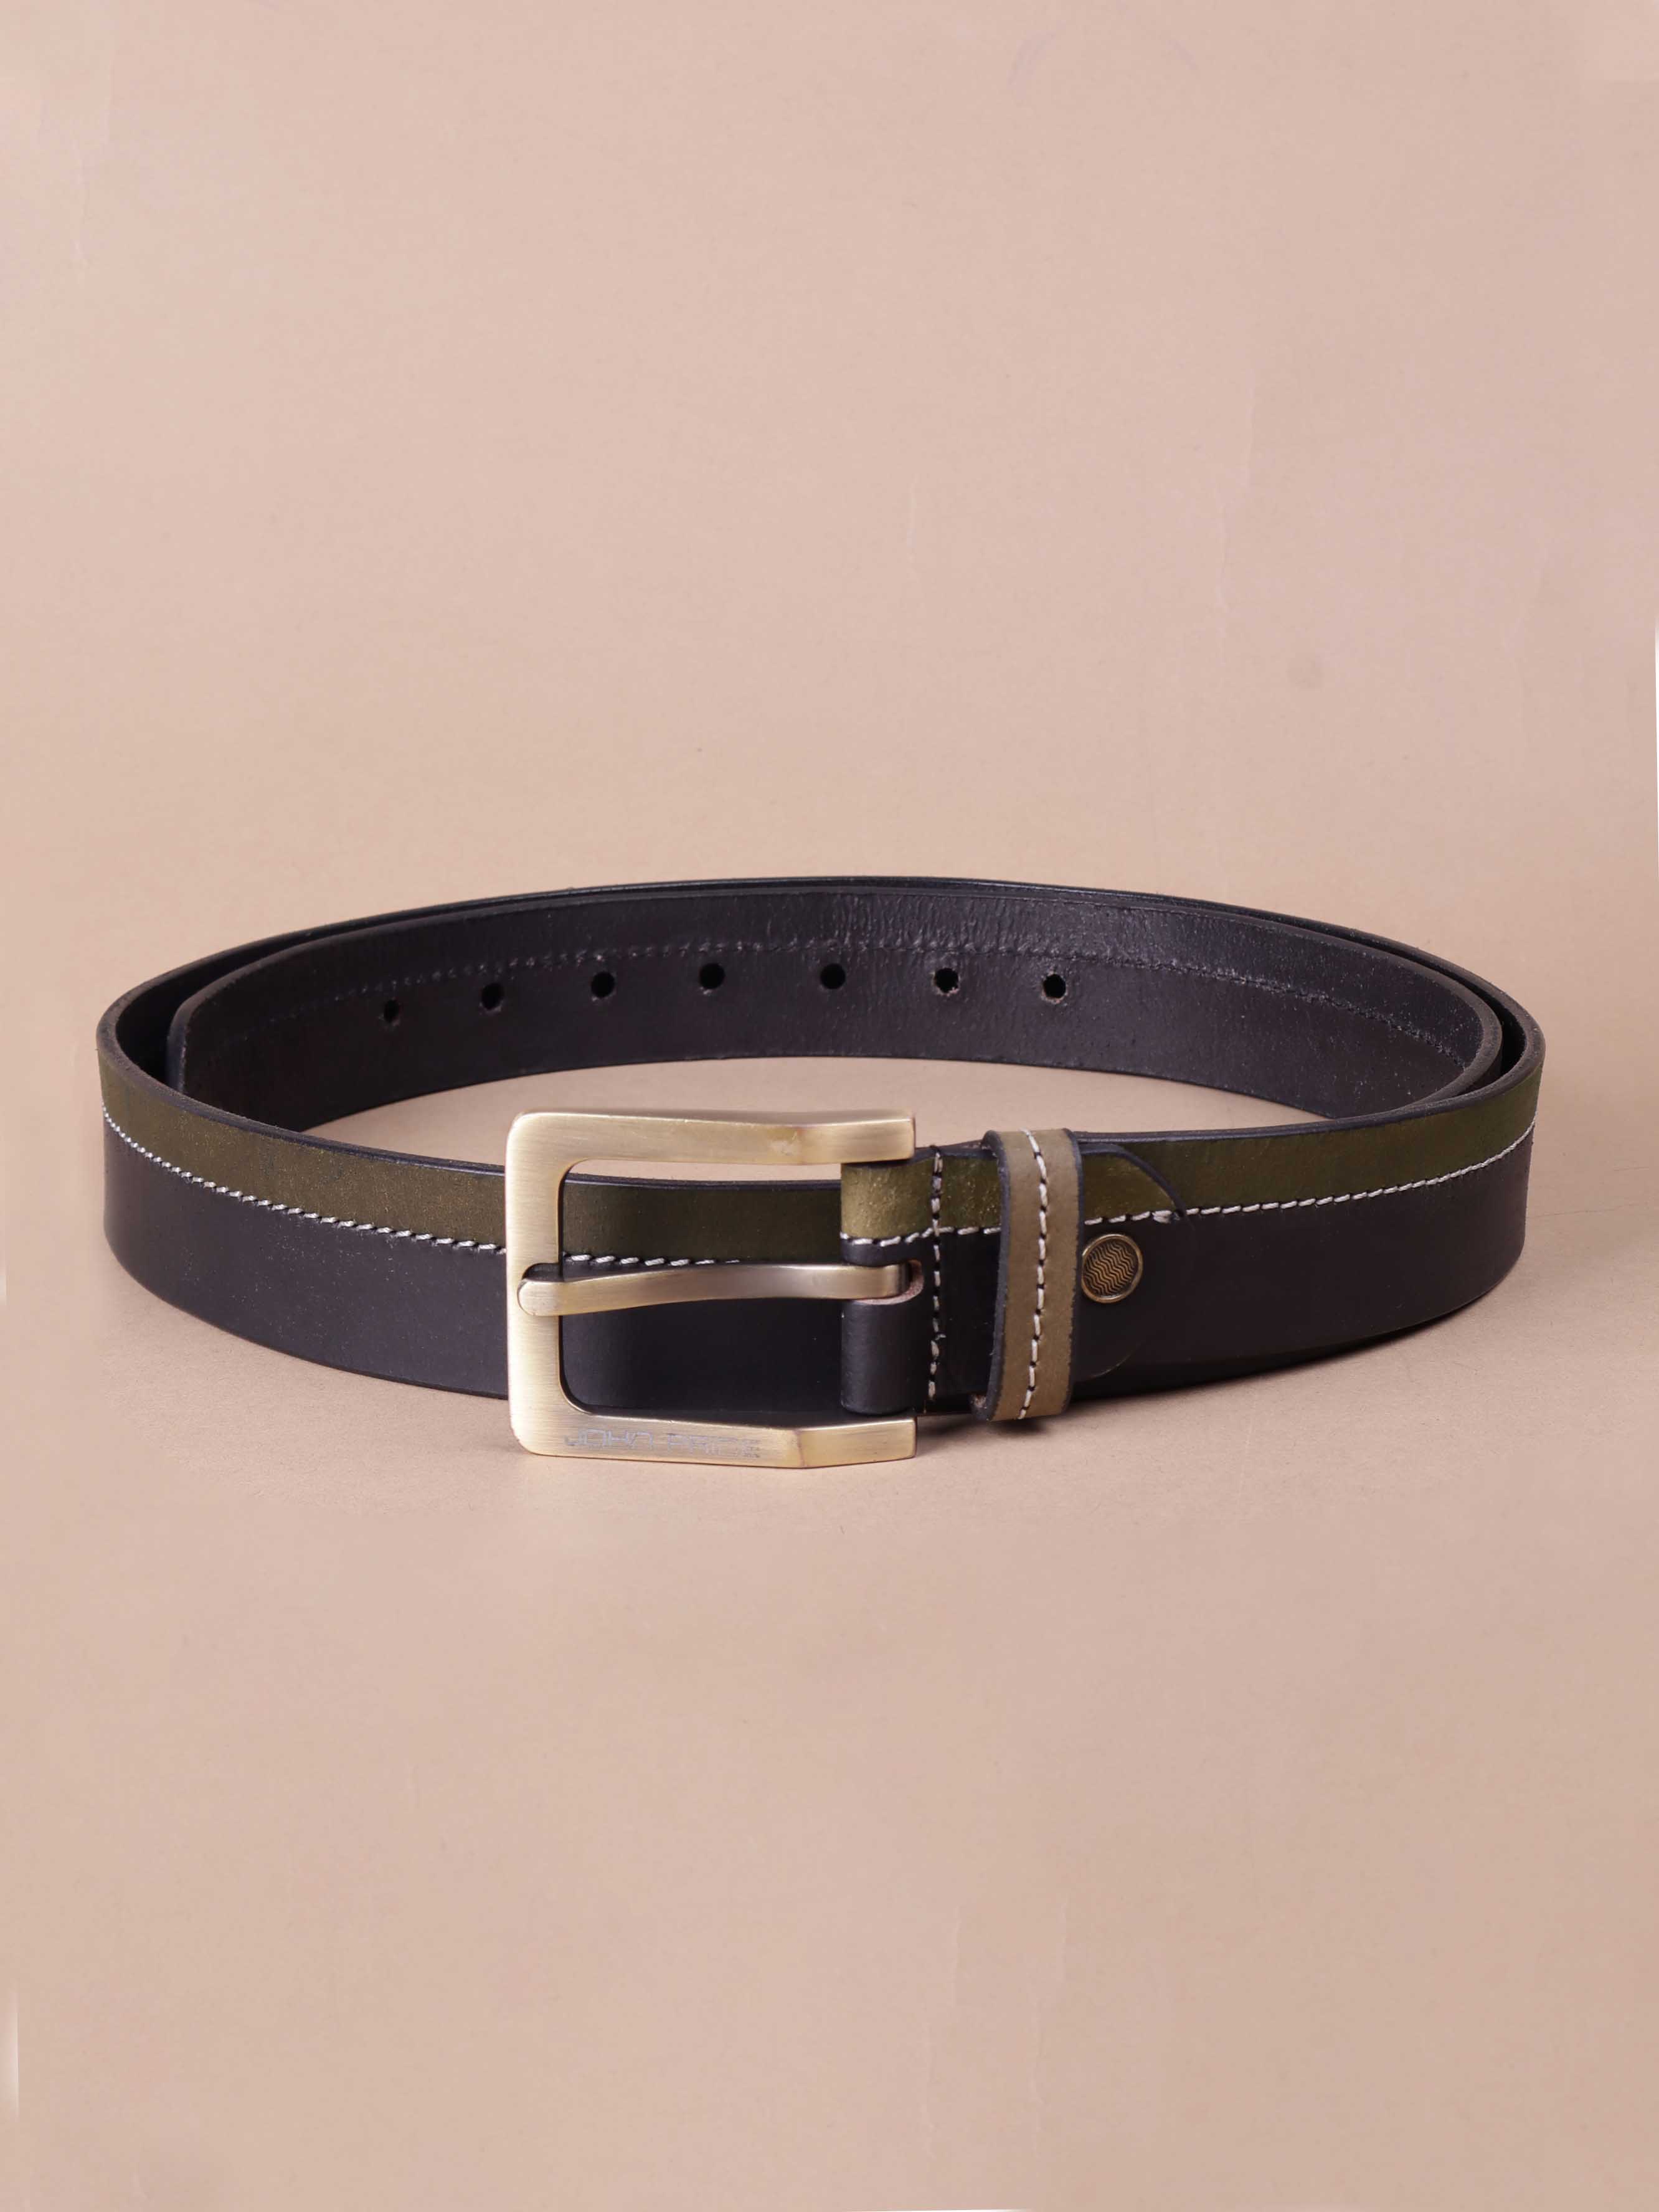 accessories/belts/JPBT1004/jpbt1004-2.jpg